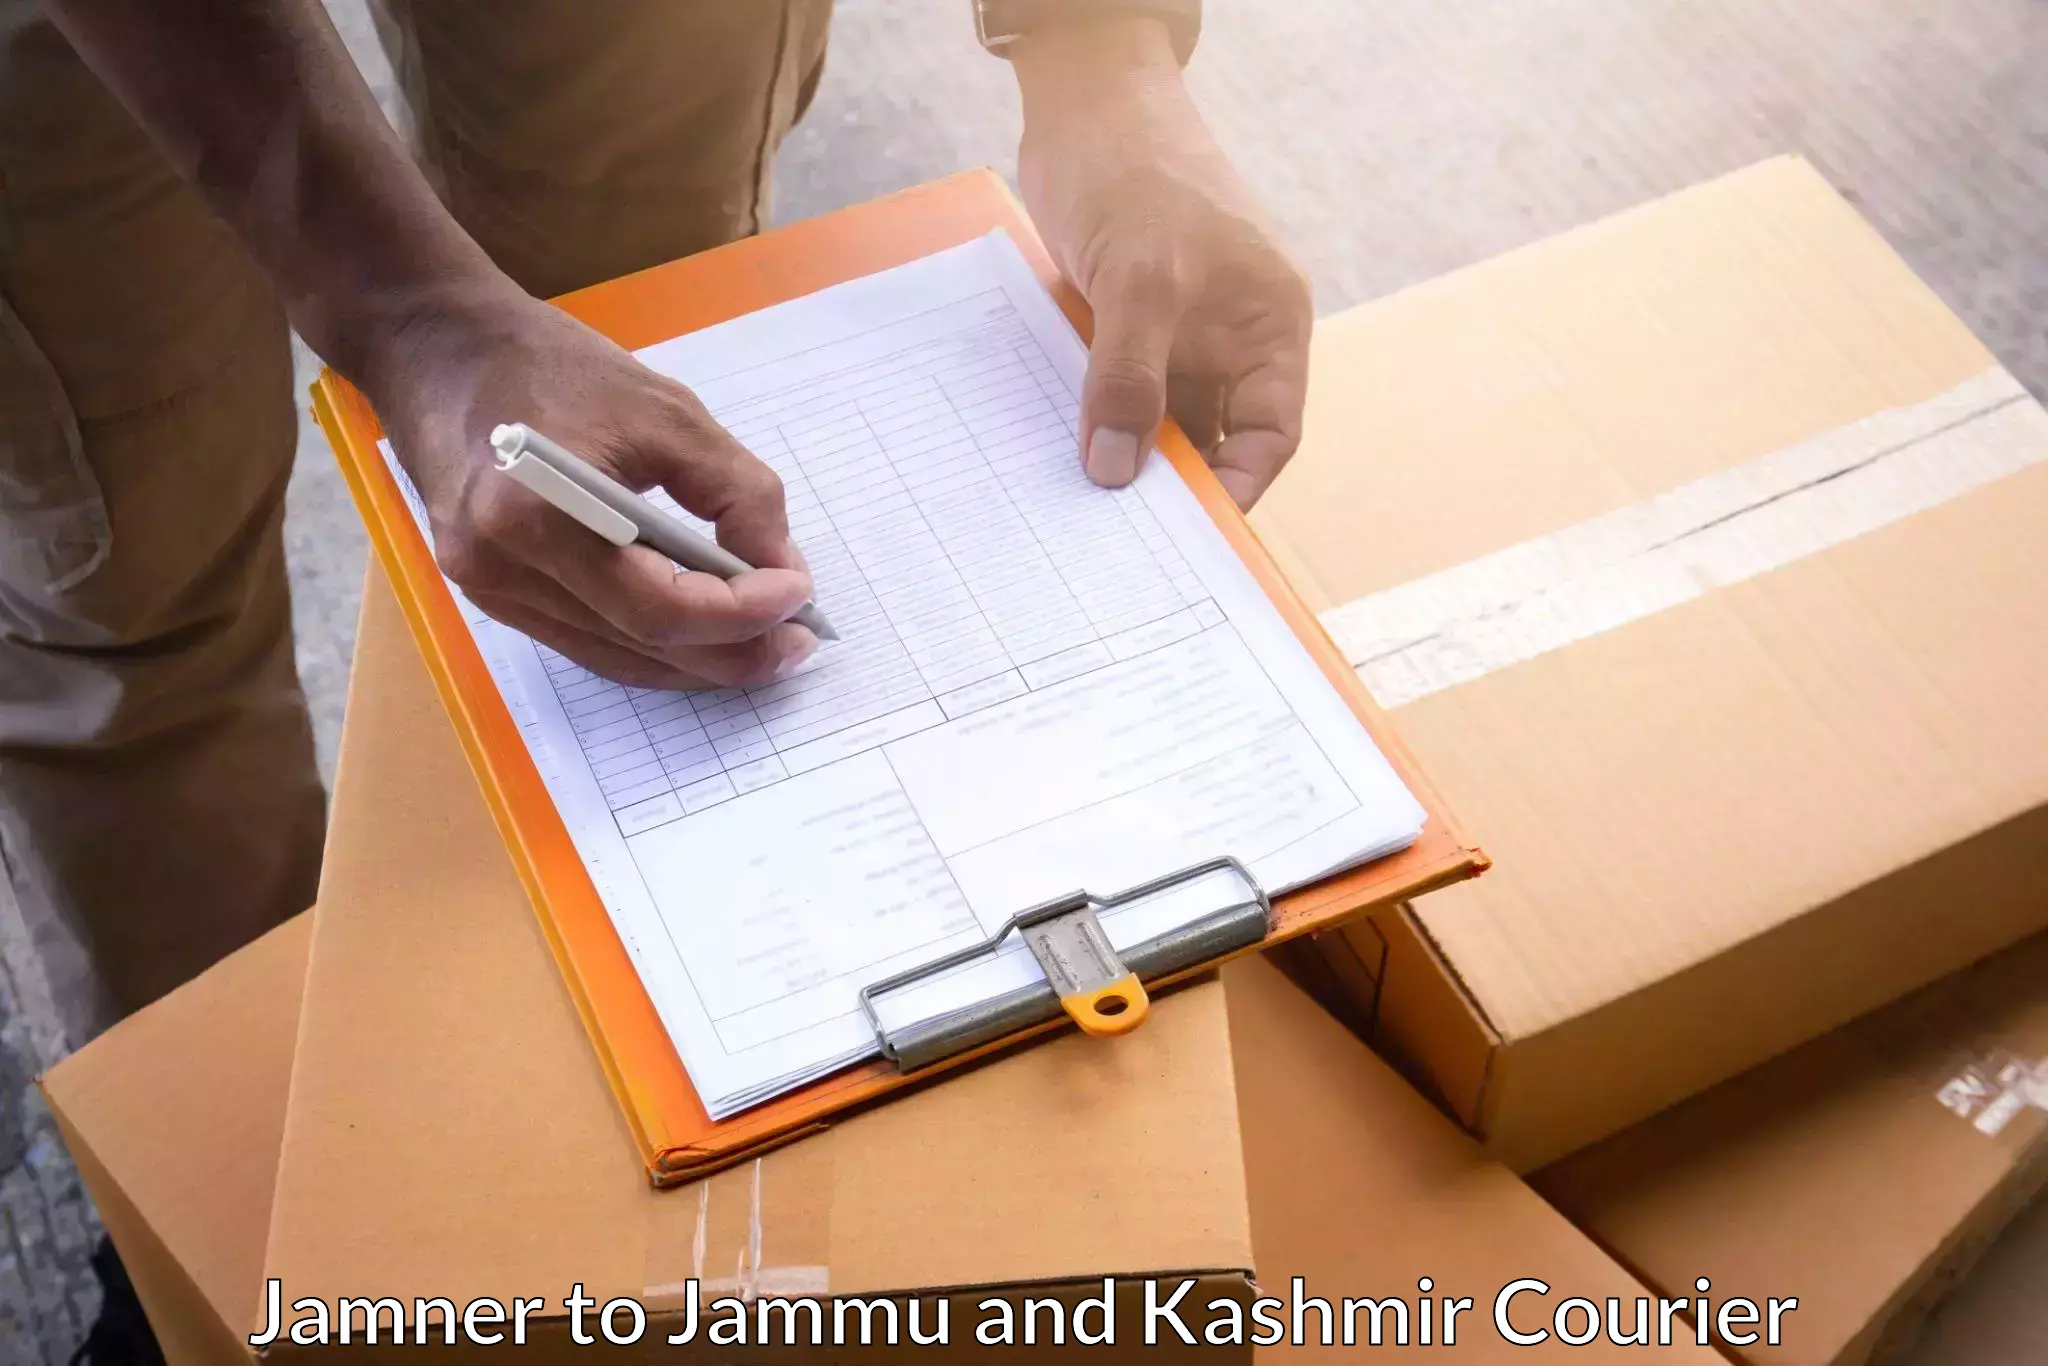 Comprehensive delivery network Jamner to Katra